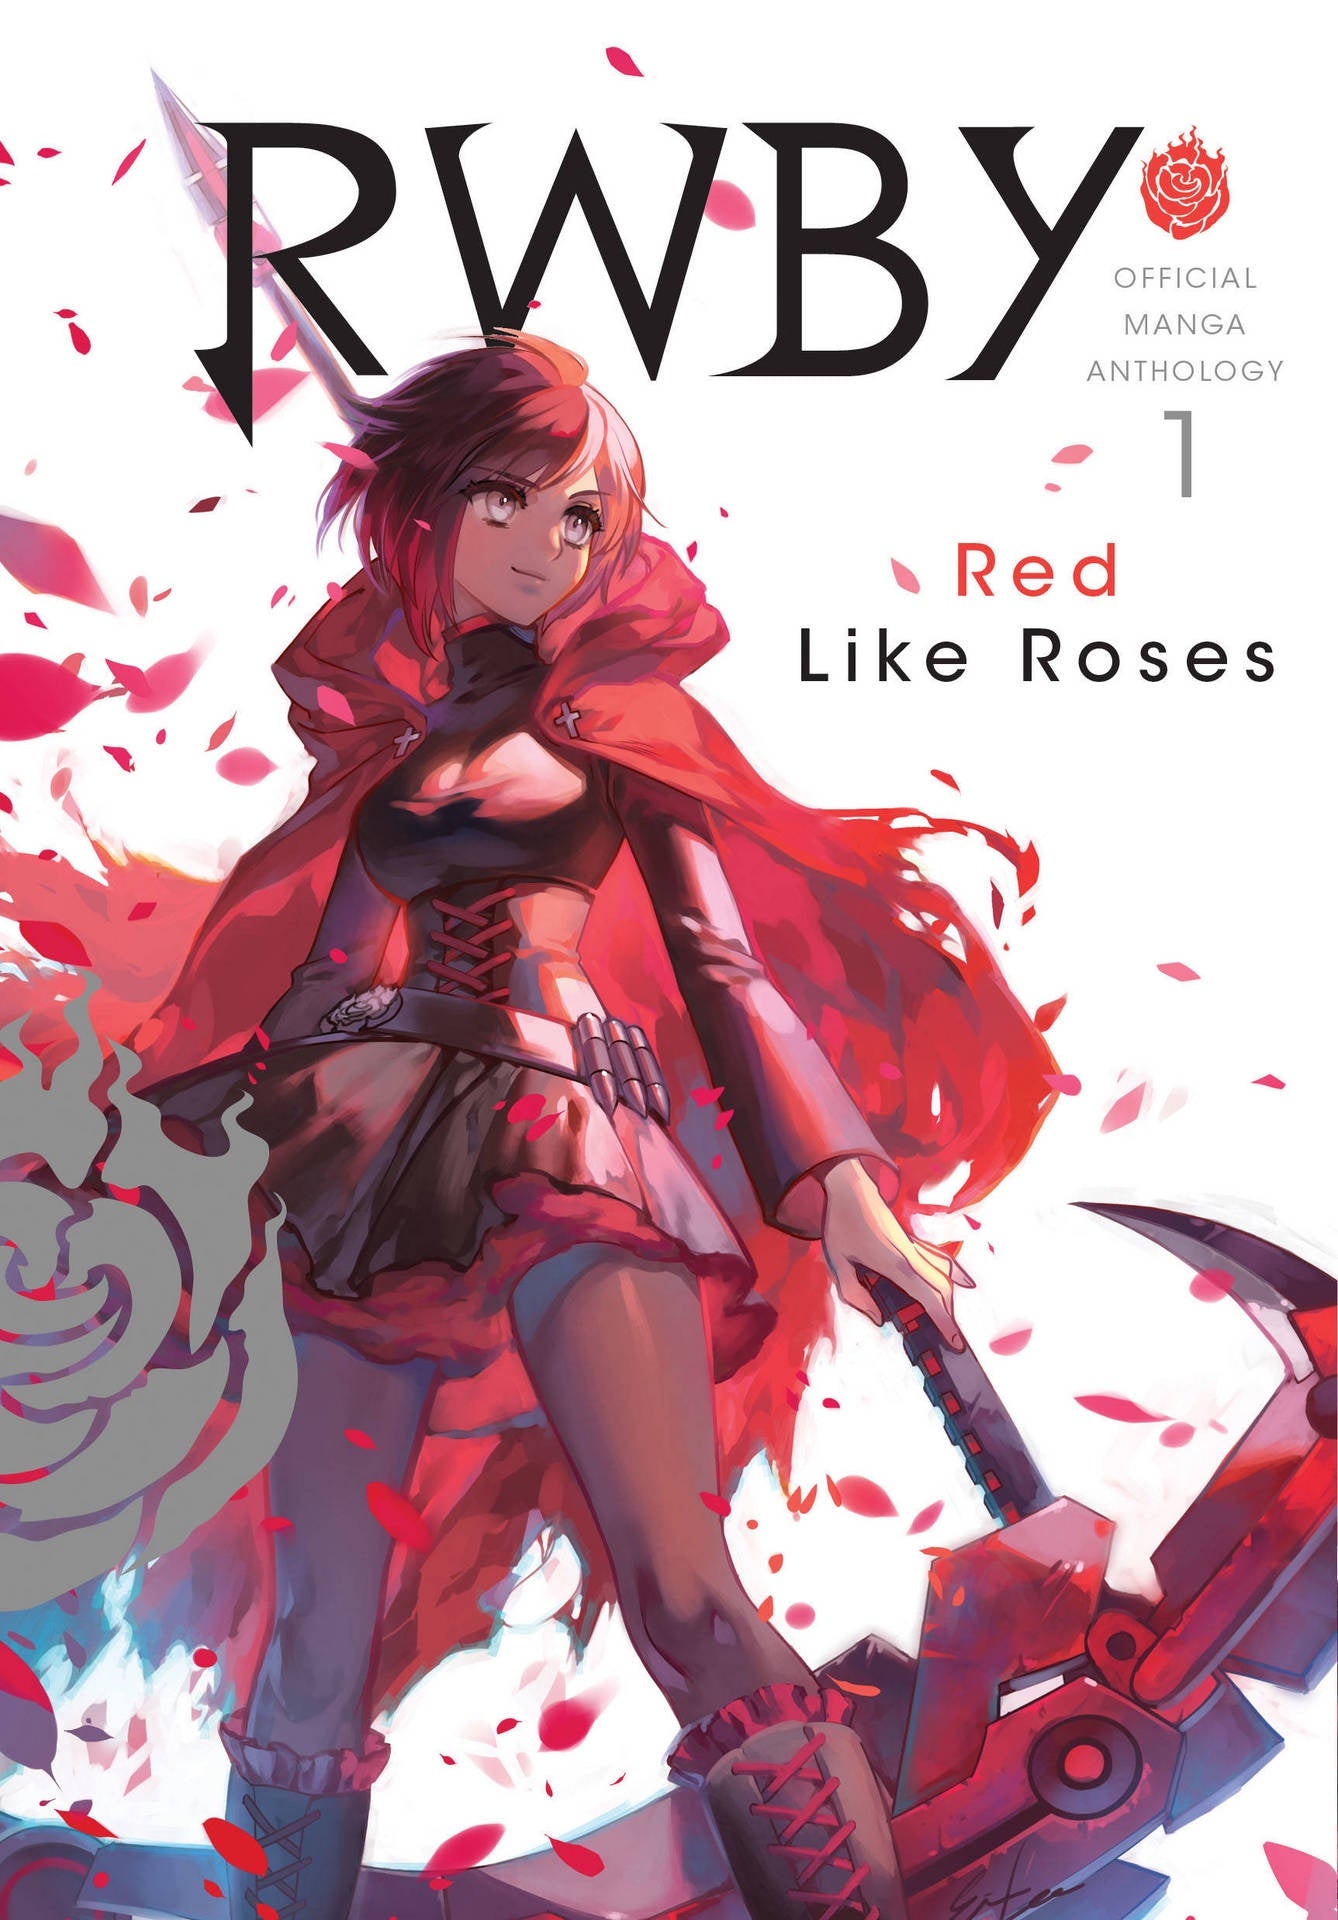 RWBY OFFICIAL MANGA ANTHOLOGY VOLUME 01 RED LIKE ROSES